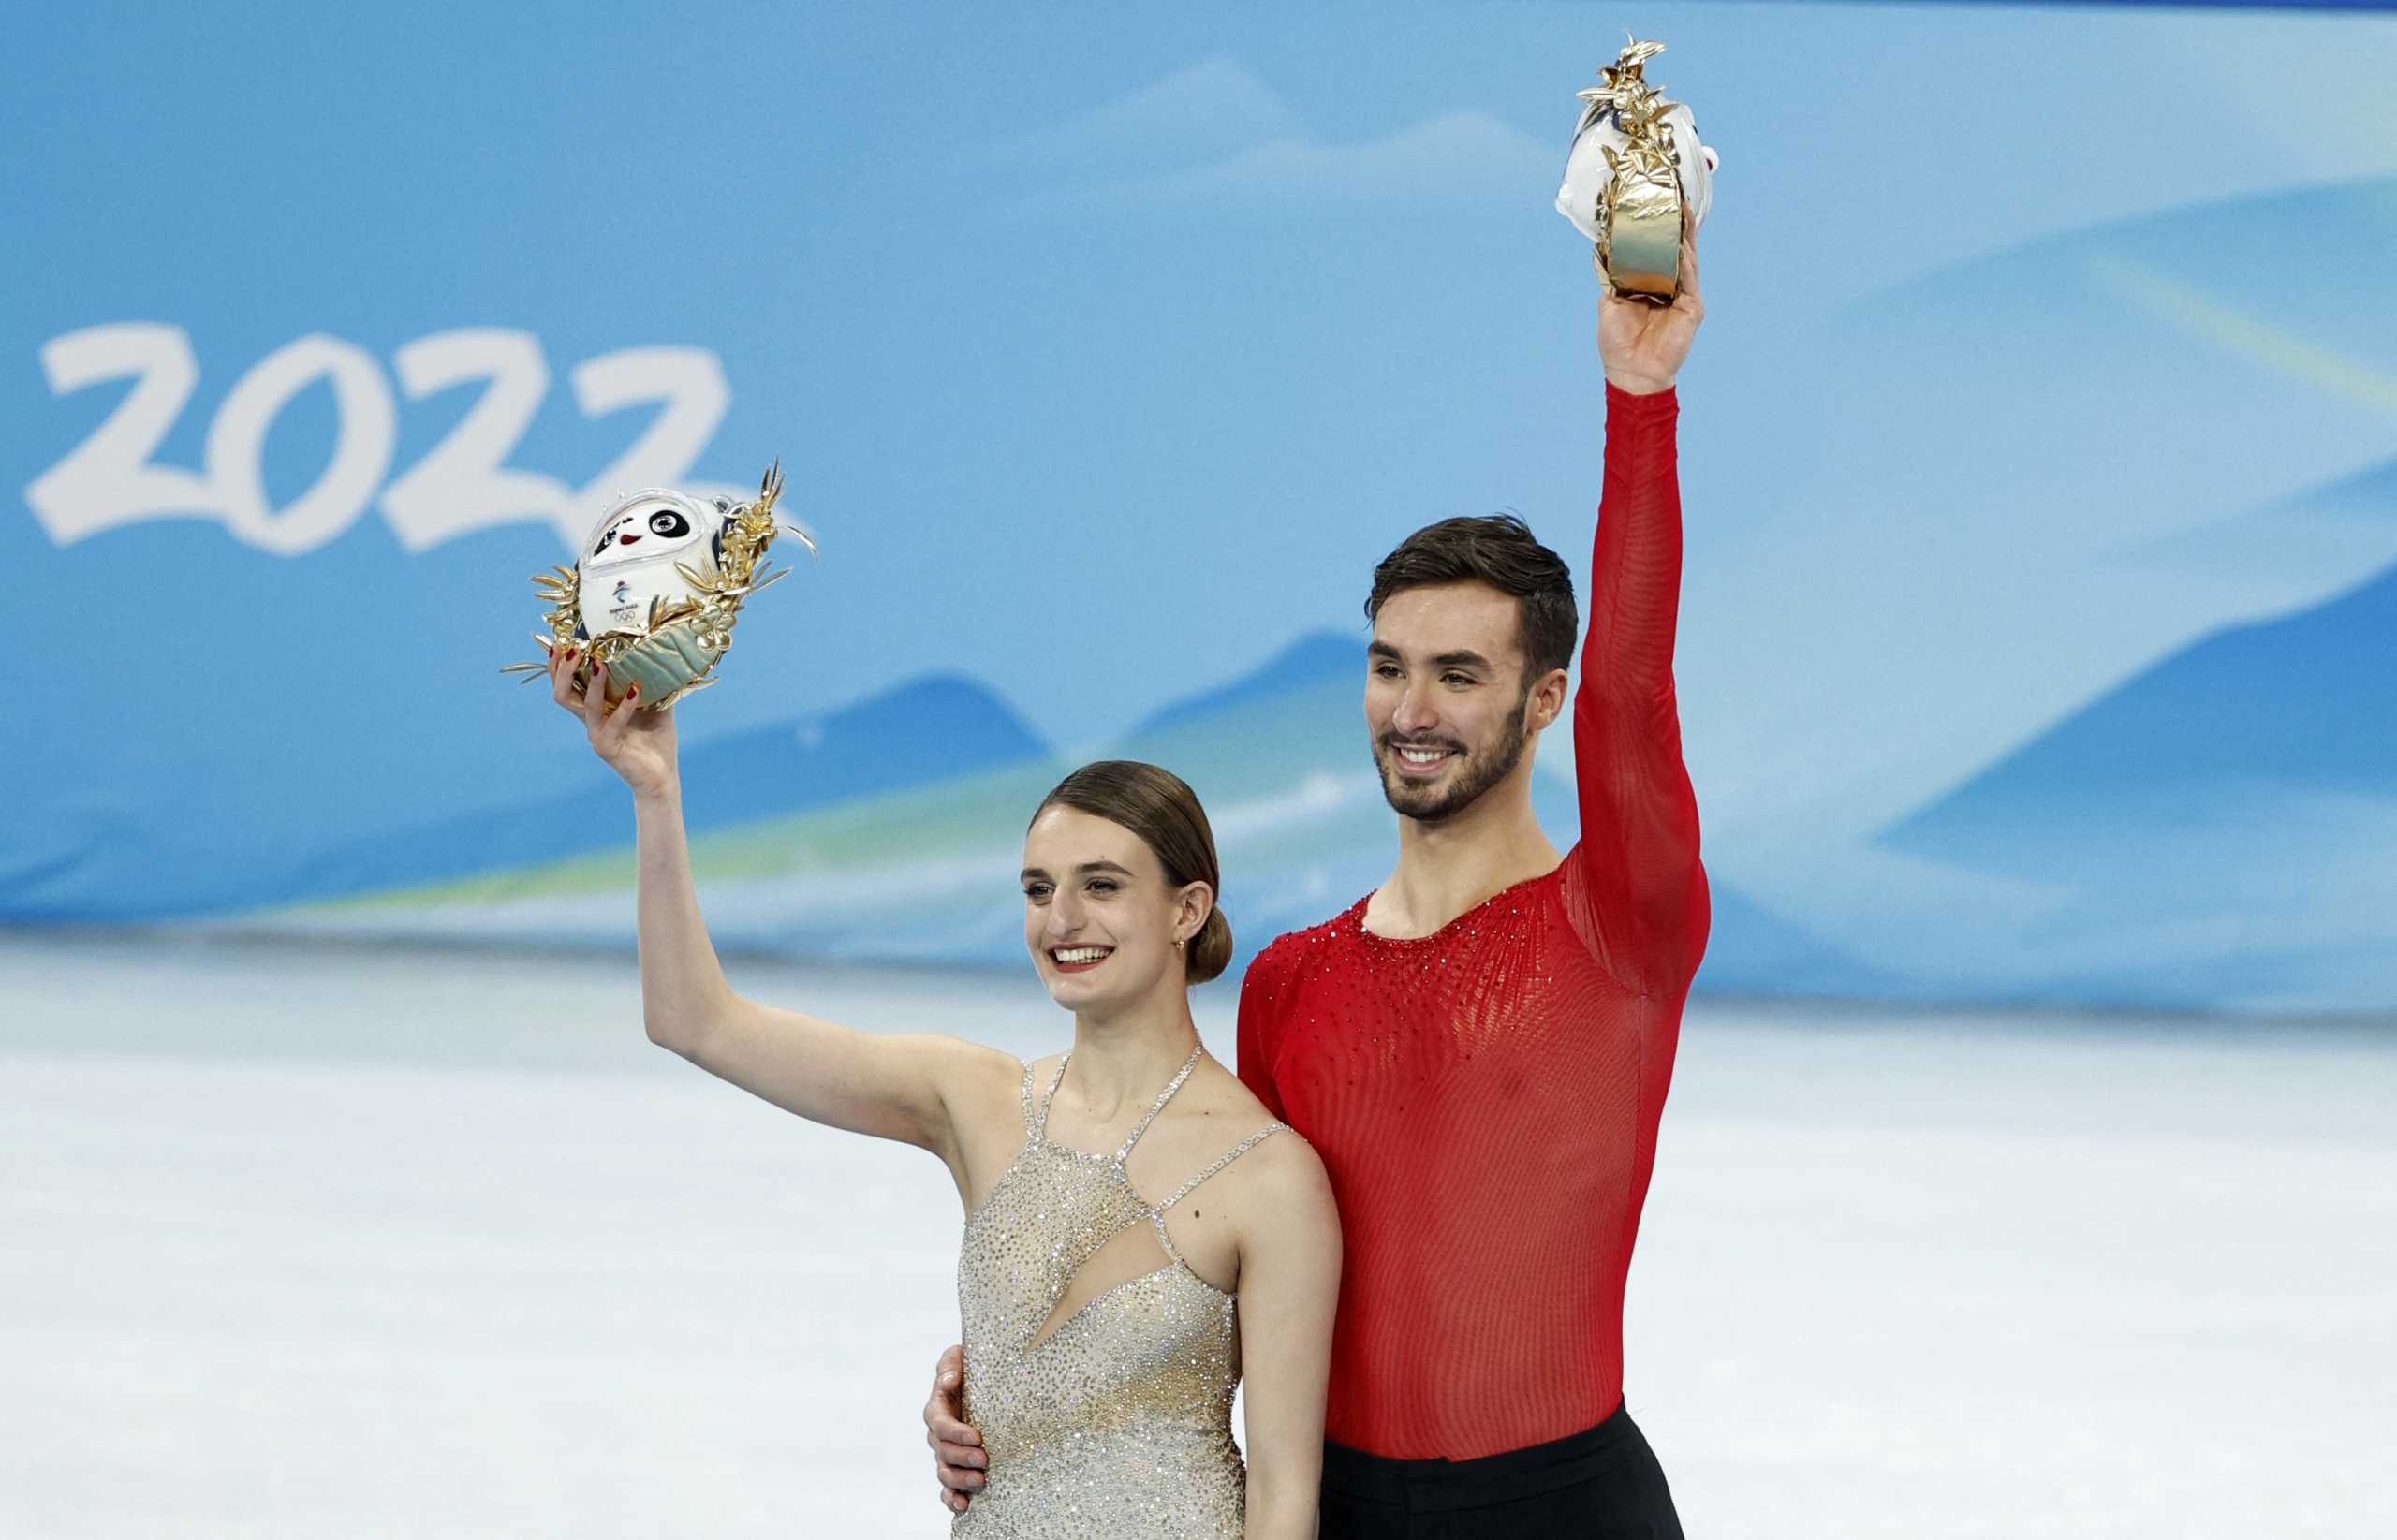 Χρυσό μετάλλιο και παγκόσμιο ρεκόρ για Παπαδάκη – Σιζερόν στους Χειμερινούς Ολυμπιακούς Αγώνες